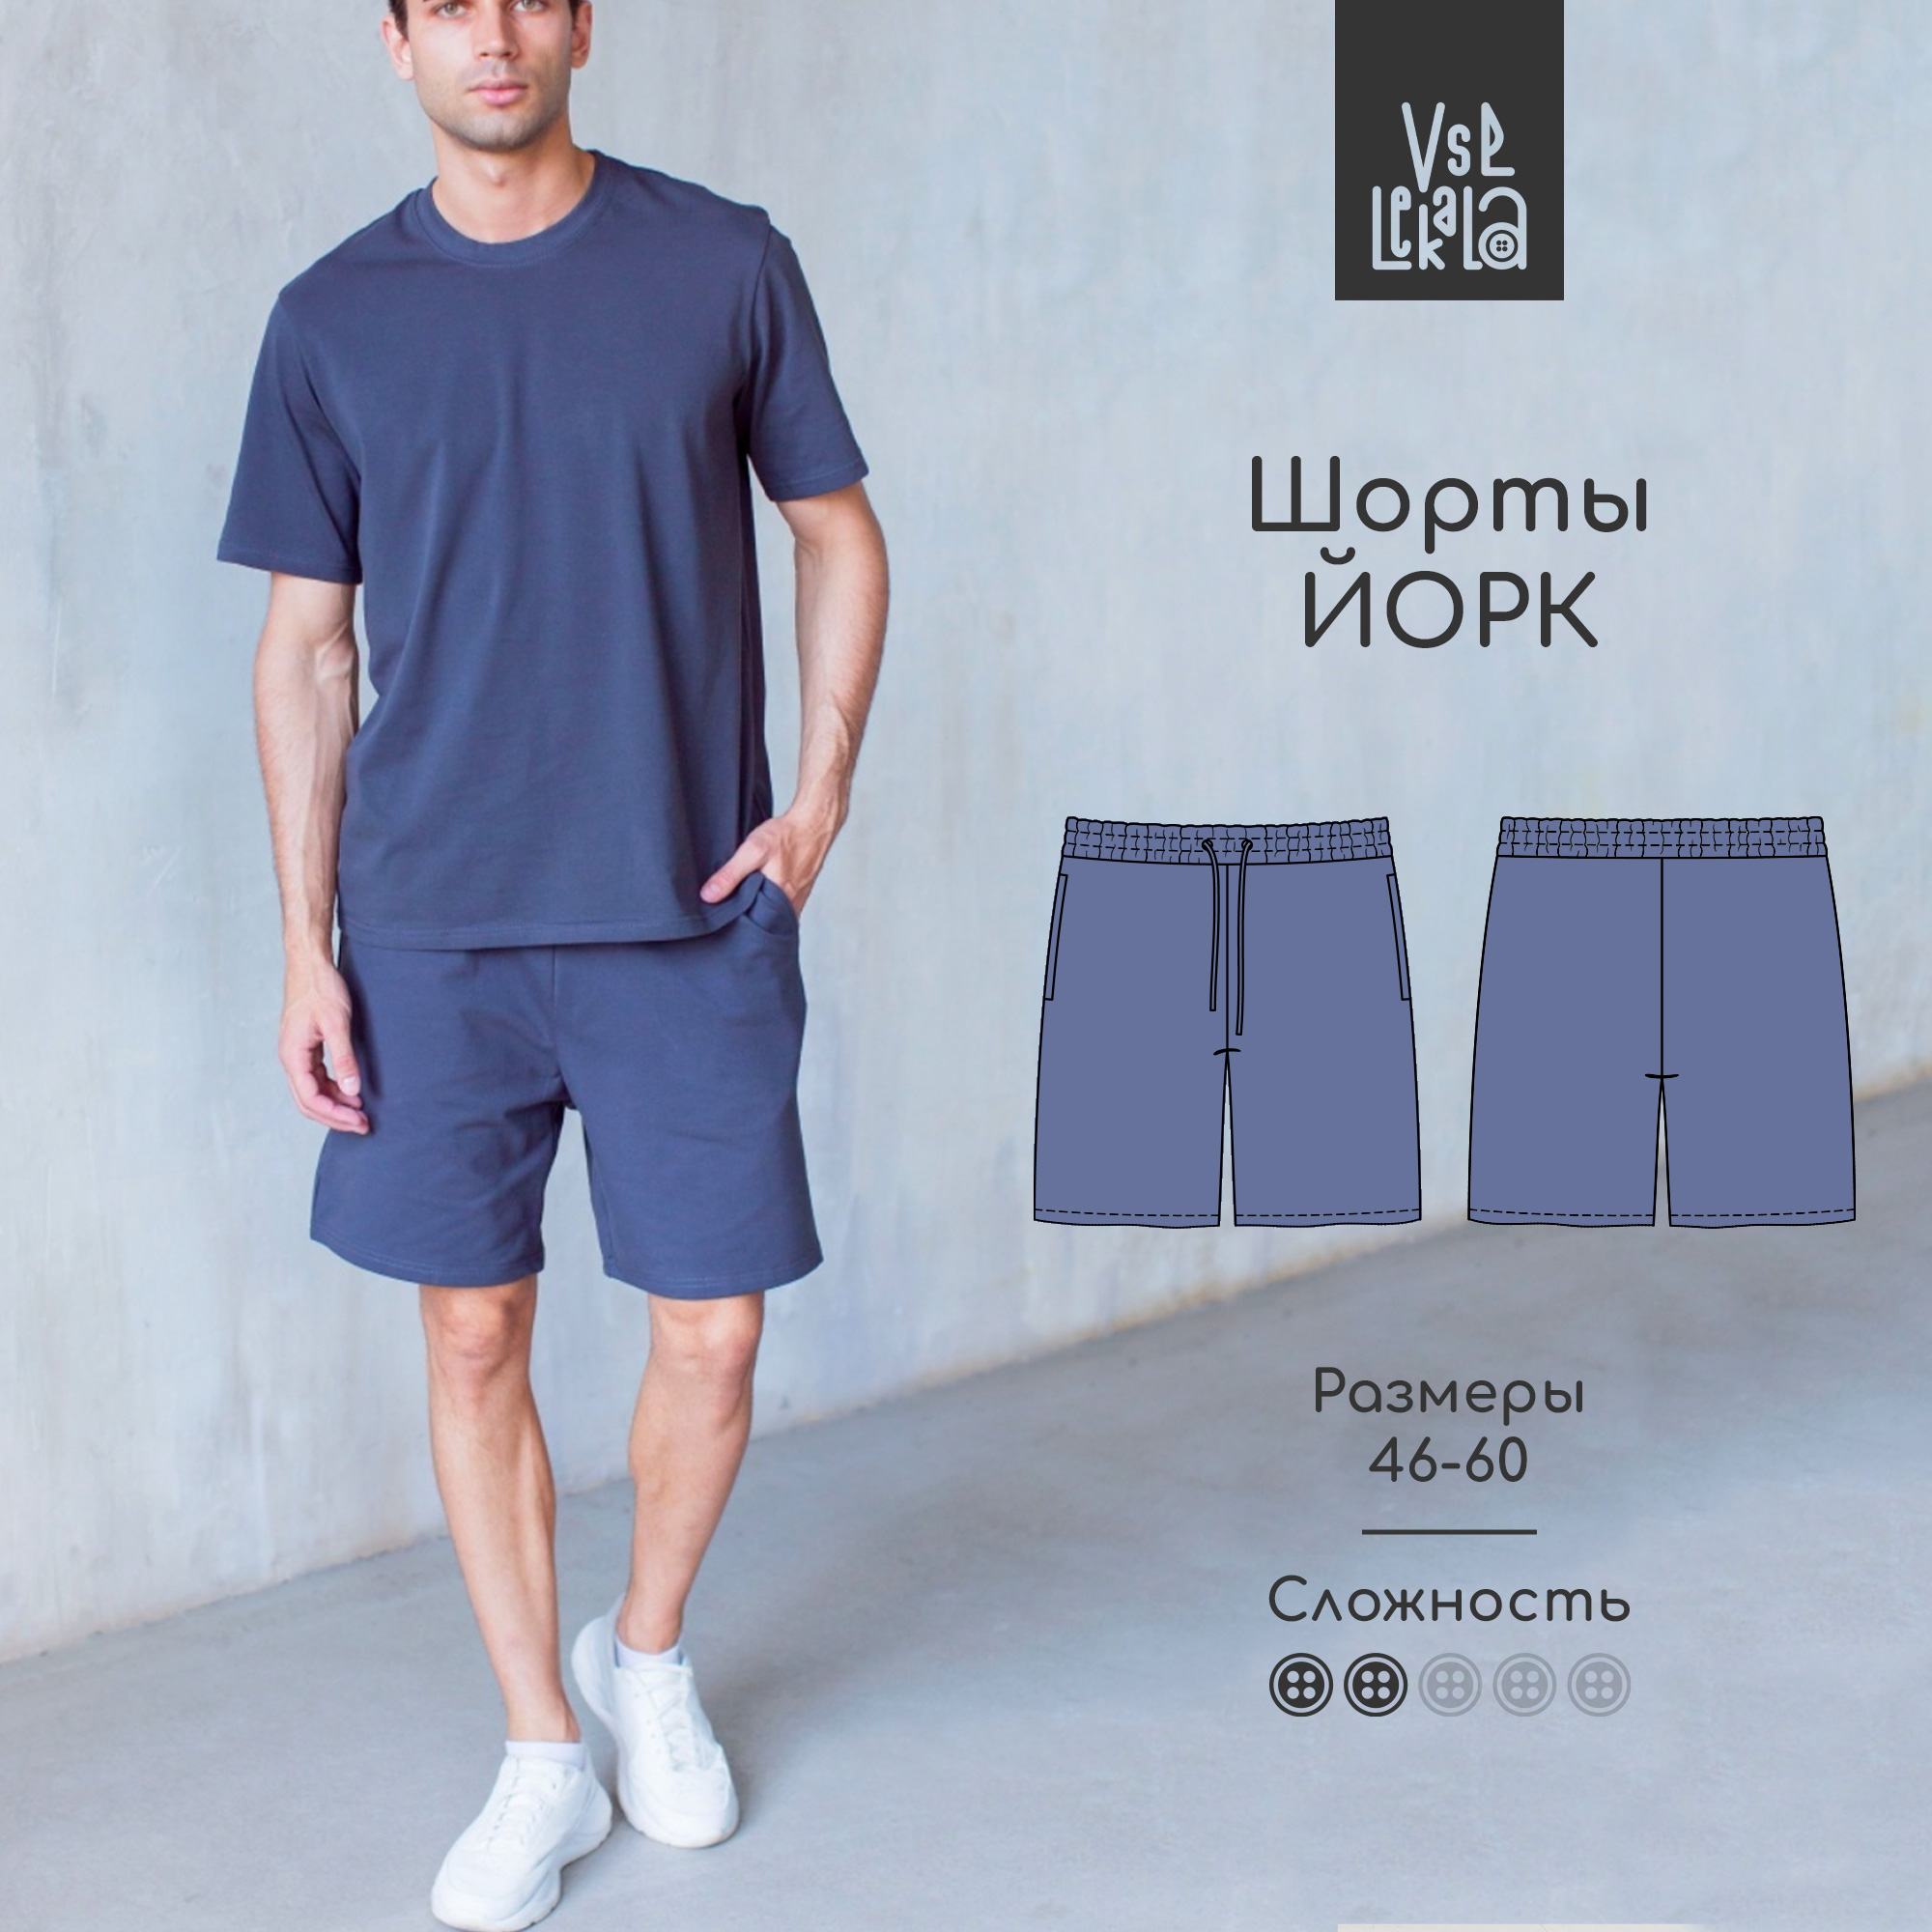 Выкройки мужской одежды от Vikisews — купить и скачать pdf